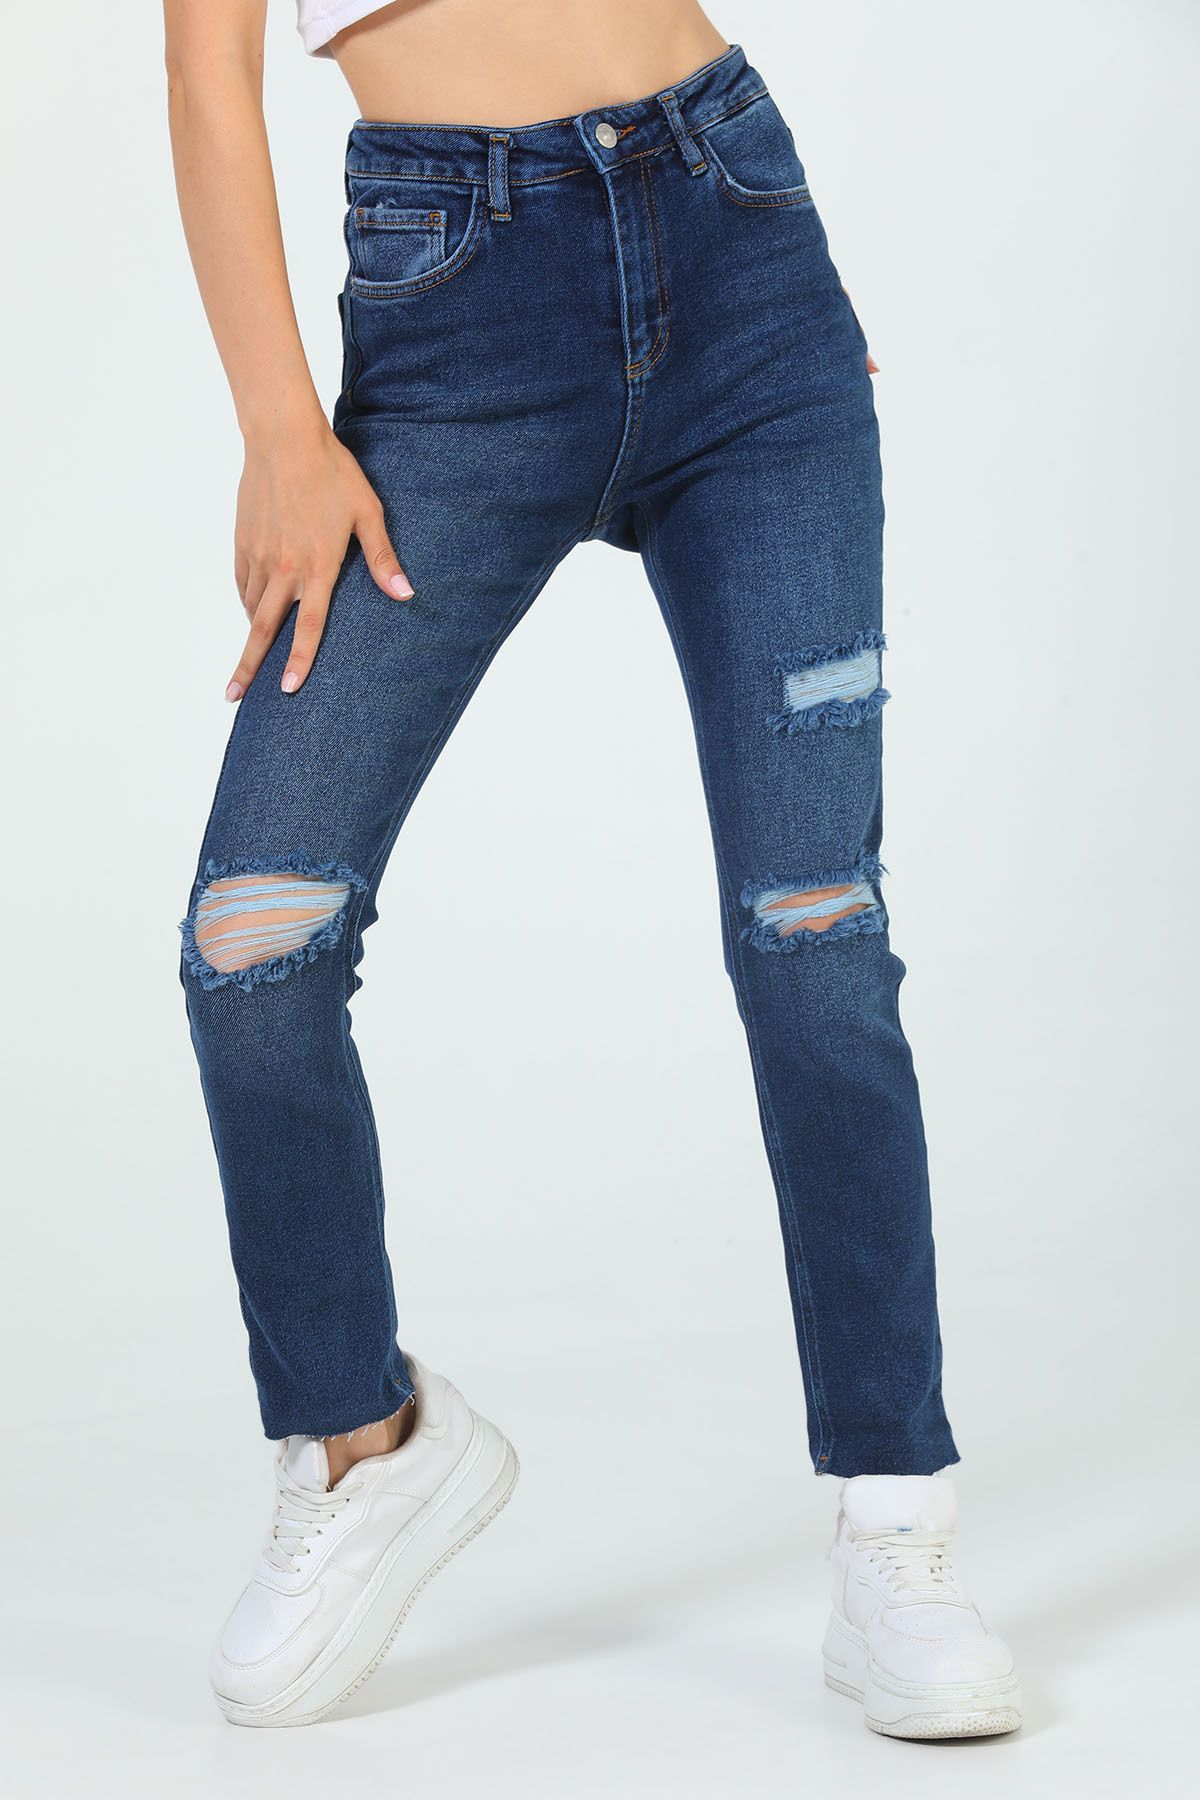 Julude Lacivert Kadın Yüksek Bel Yırtıklı Jeans Pantolon